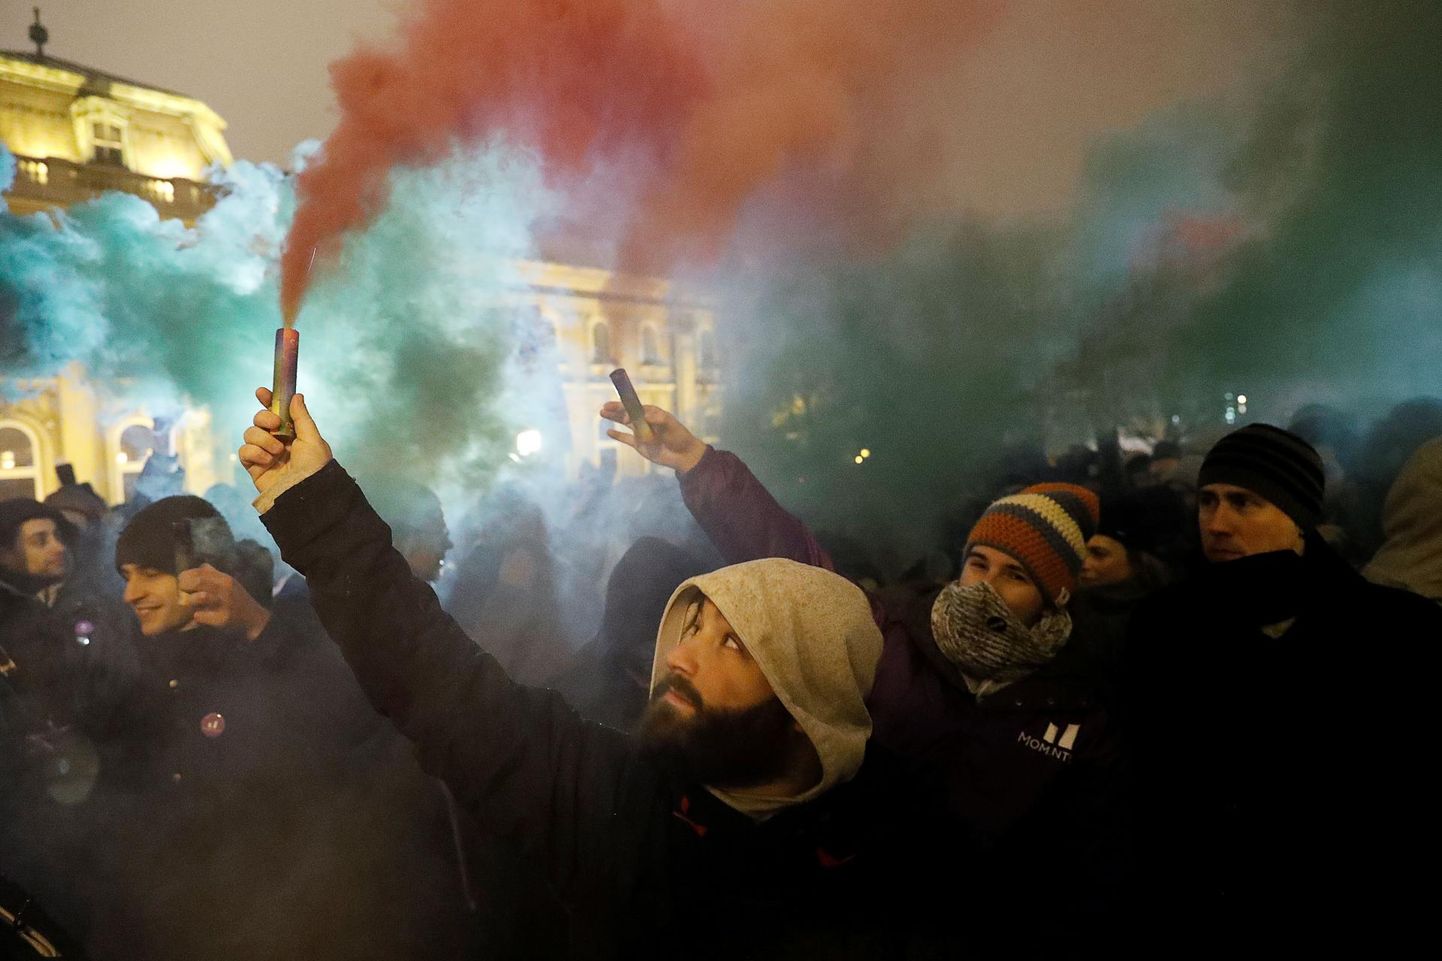 Ungaris möödunud aastal alanud meeleavaldused valitsuse vastu on juba kandunud ka tänavusse. FOTO: Bernadett Szabo/Reuters/Scanpix